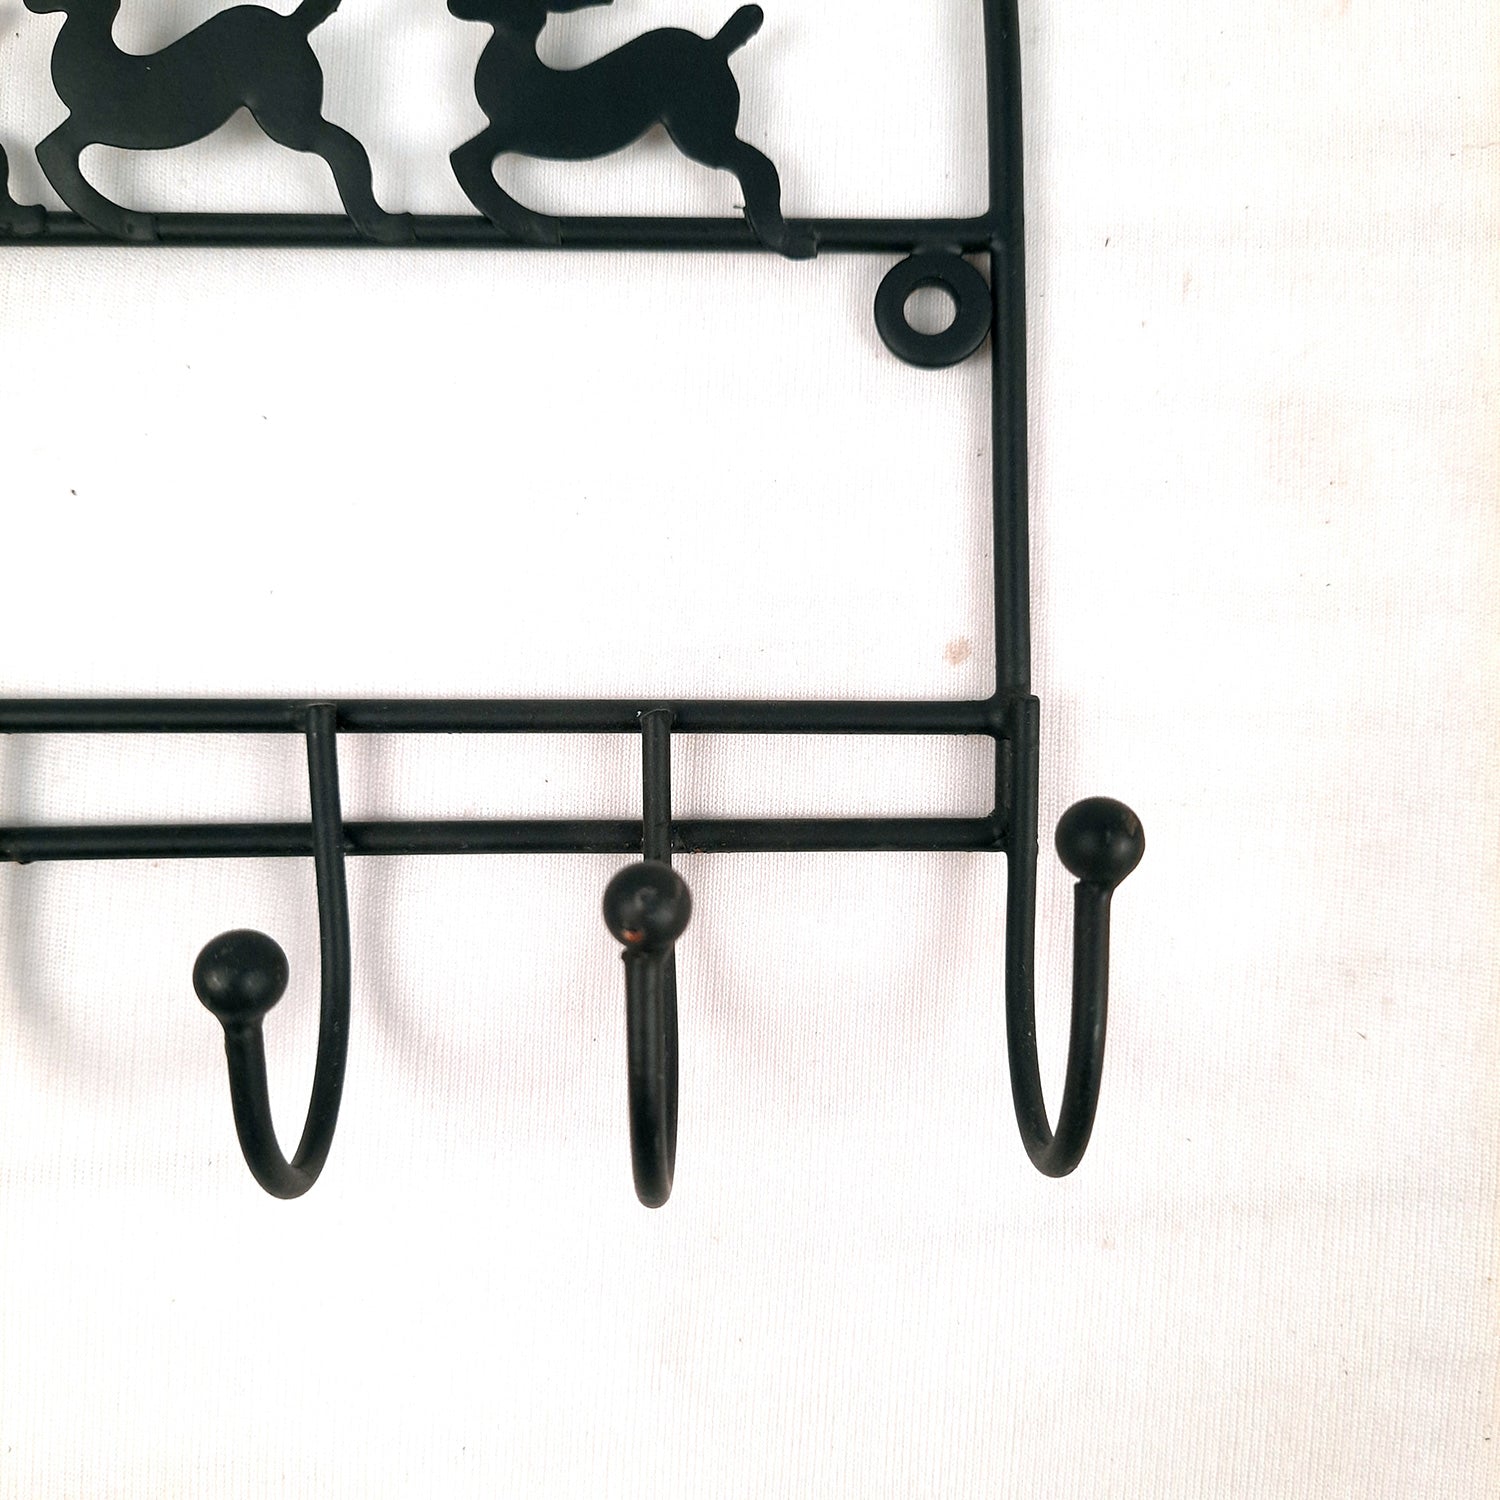 Key Holder Stands | Keys Hook Wall Hangers - Reindeer Design | Keys Organizer - For Home, Entrance, Office Decor & Gifts - 9 Inch (5 Hooks) - Apkamart #Style_Pack of 1